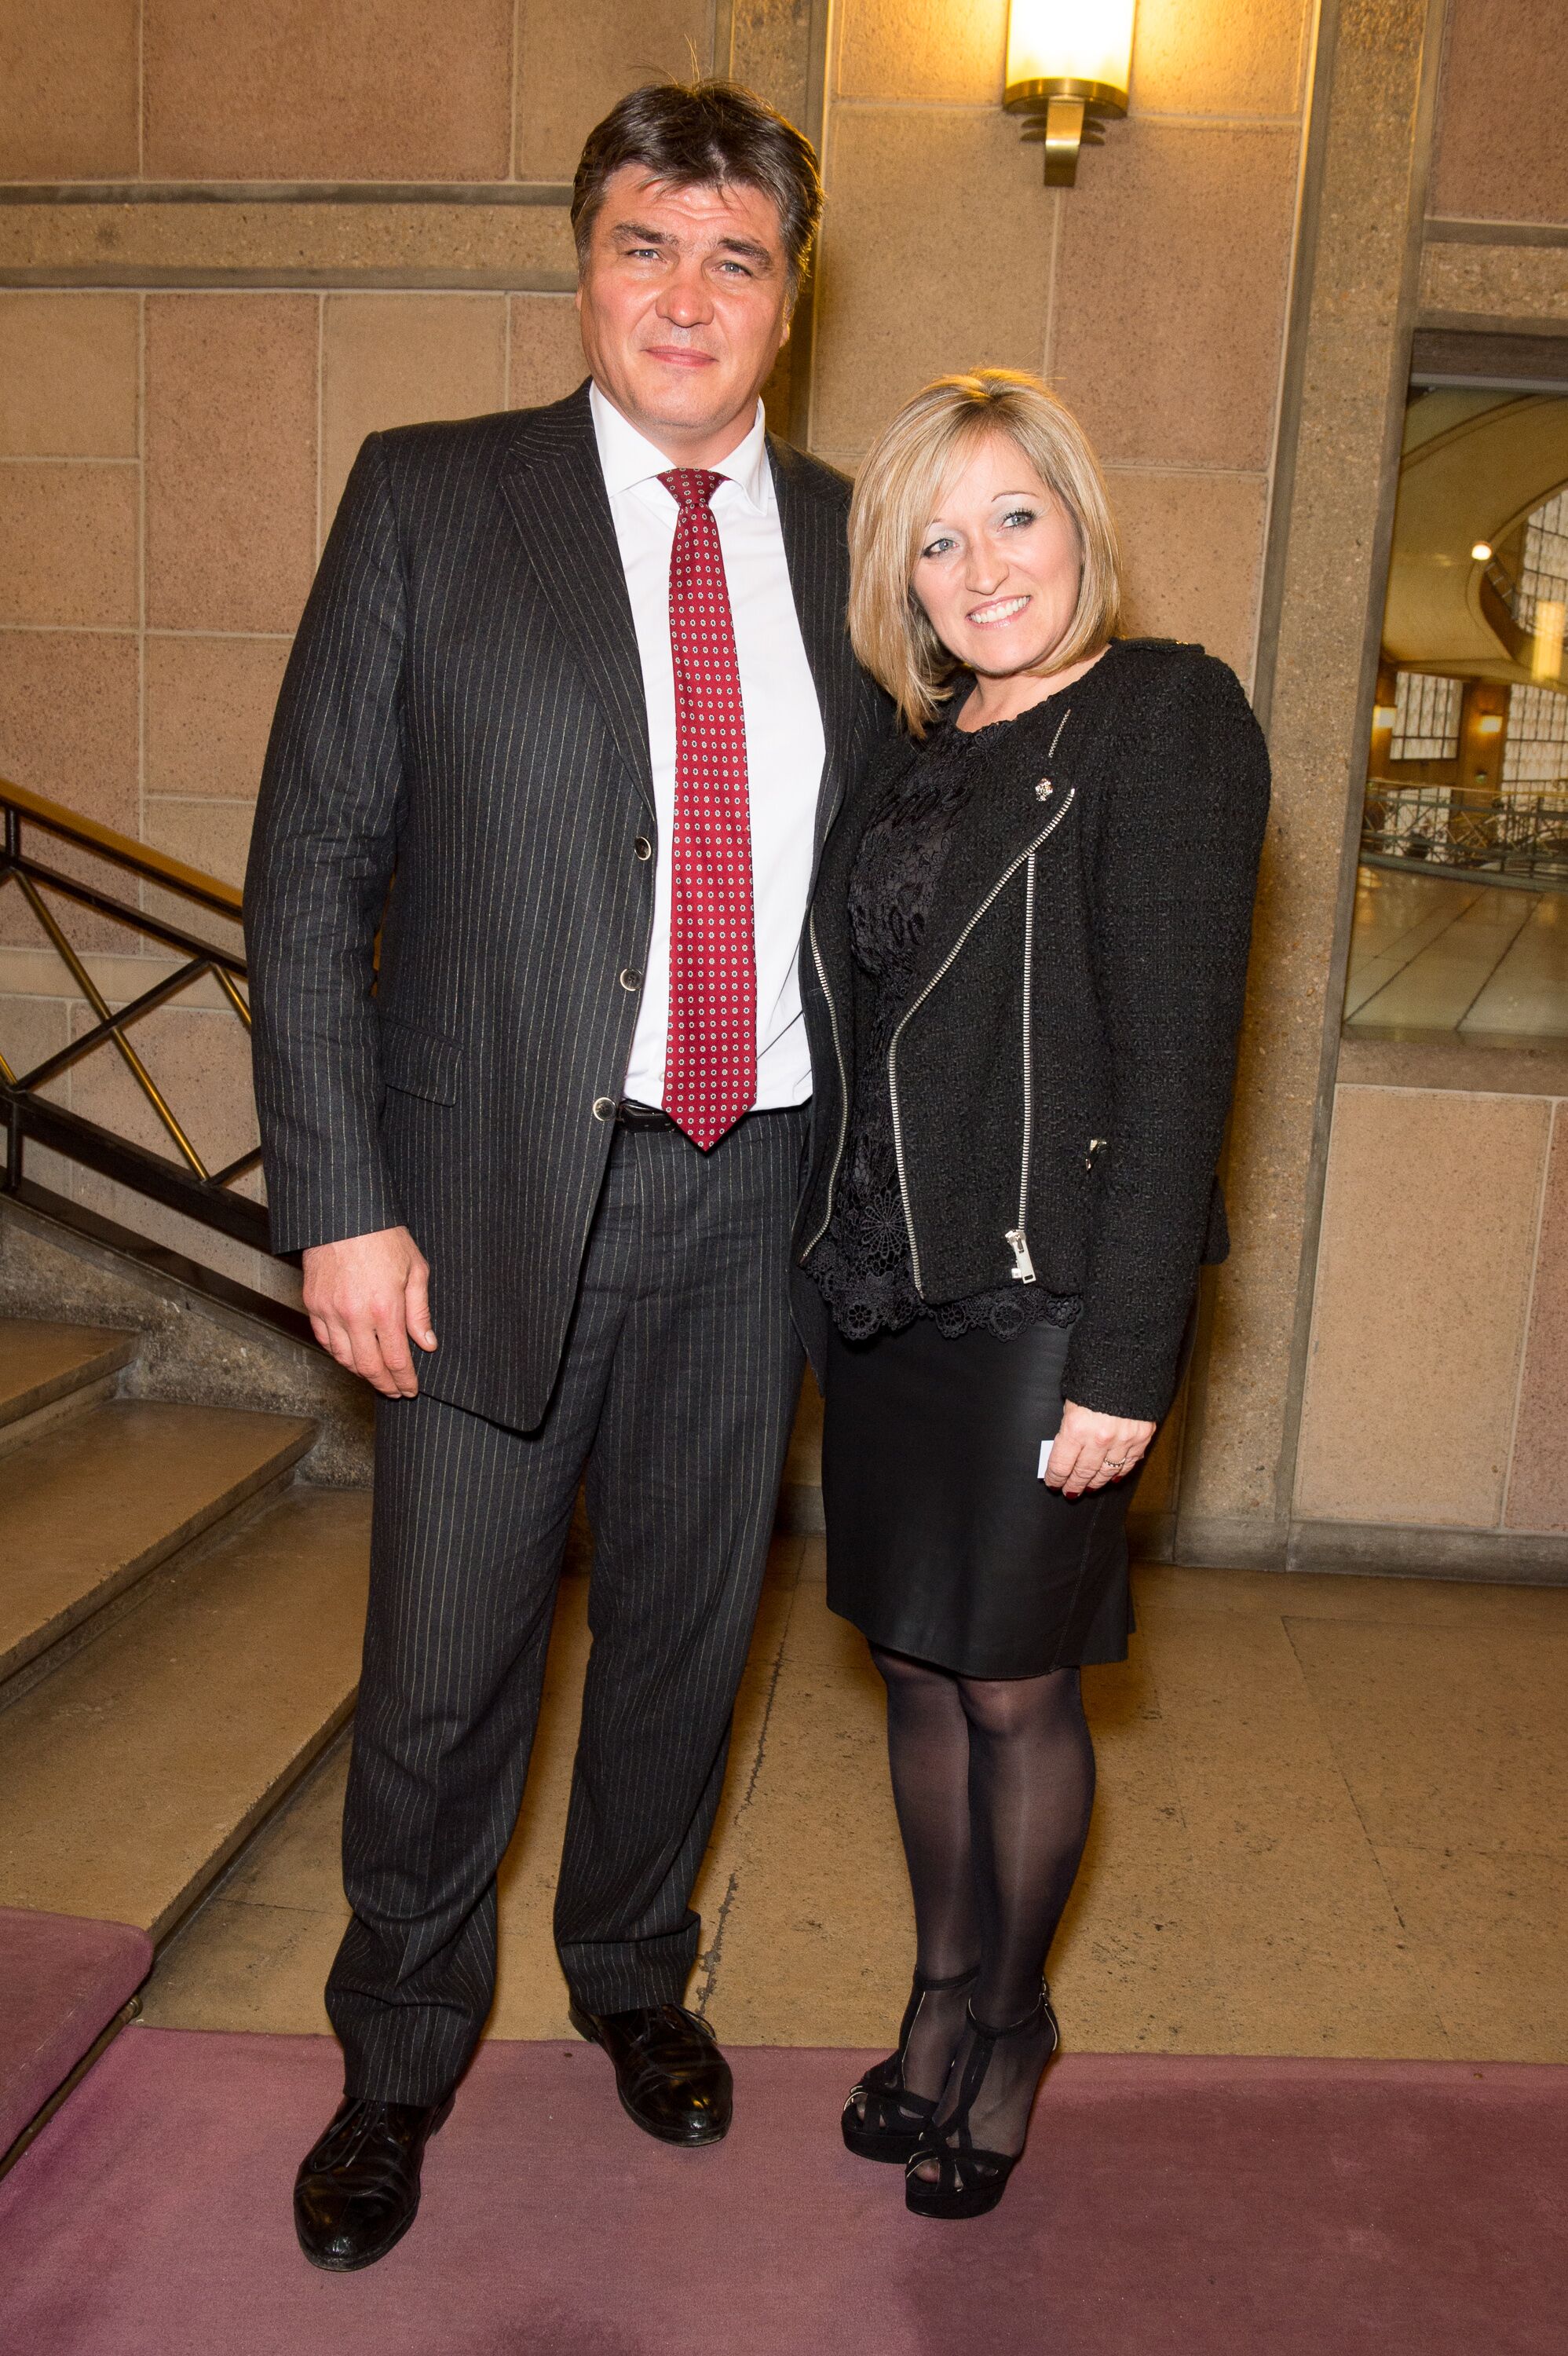 David Douillet et son épouse Valérie au Palais d'Iena, en l'honneur de l'artiste américain Jeff Koons, le 27 novembre 2012 à Paris, France. | Photo : Getty Images